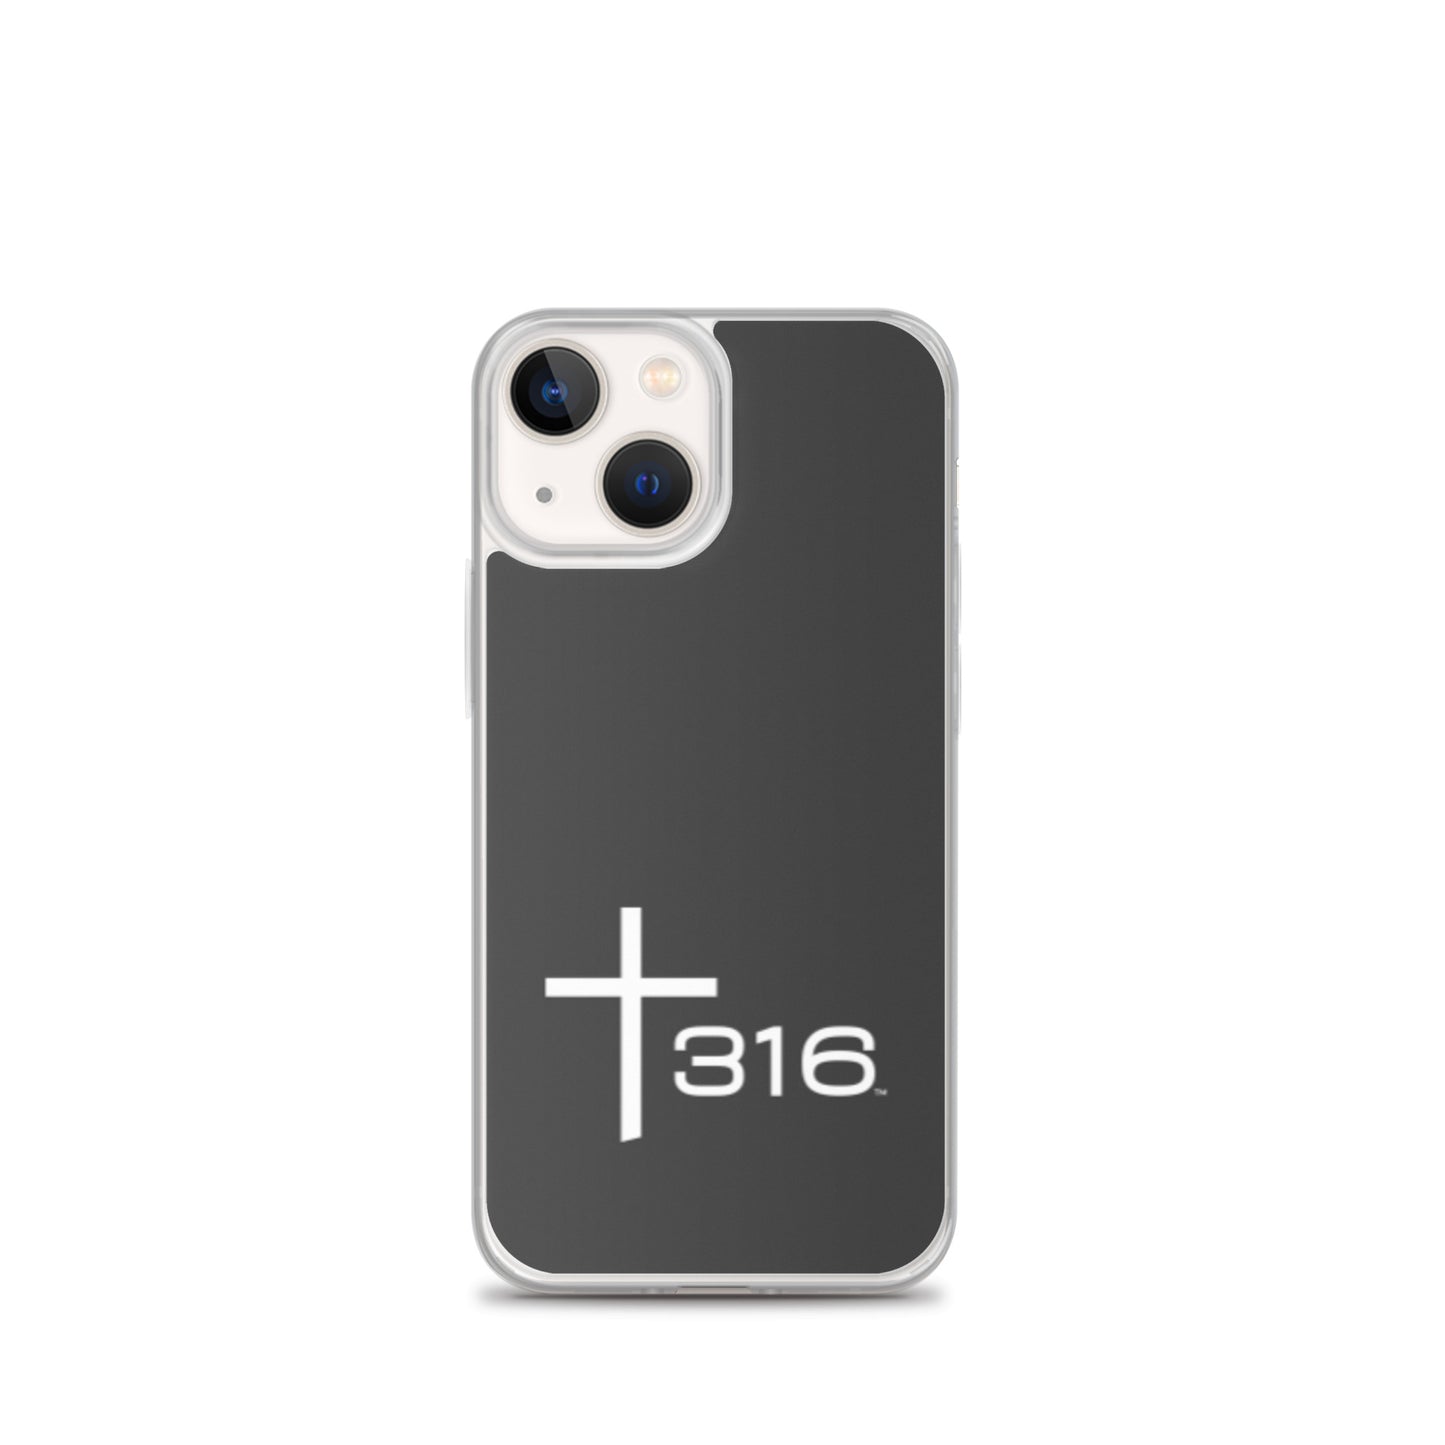 Trinity 316 ICON iPhone Case